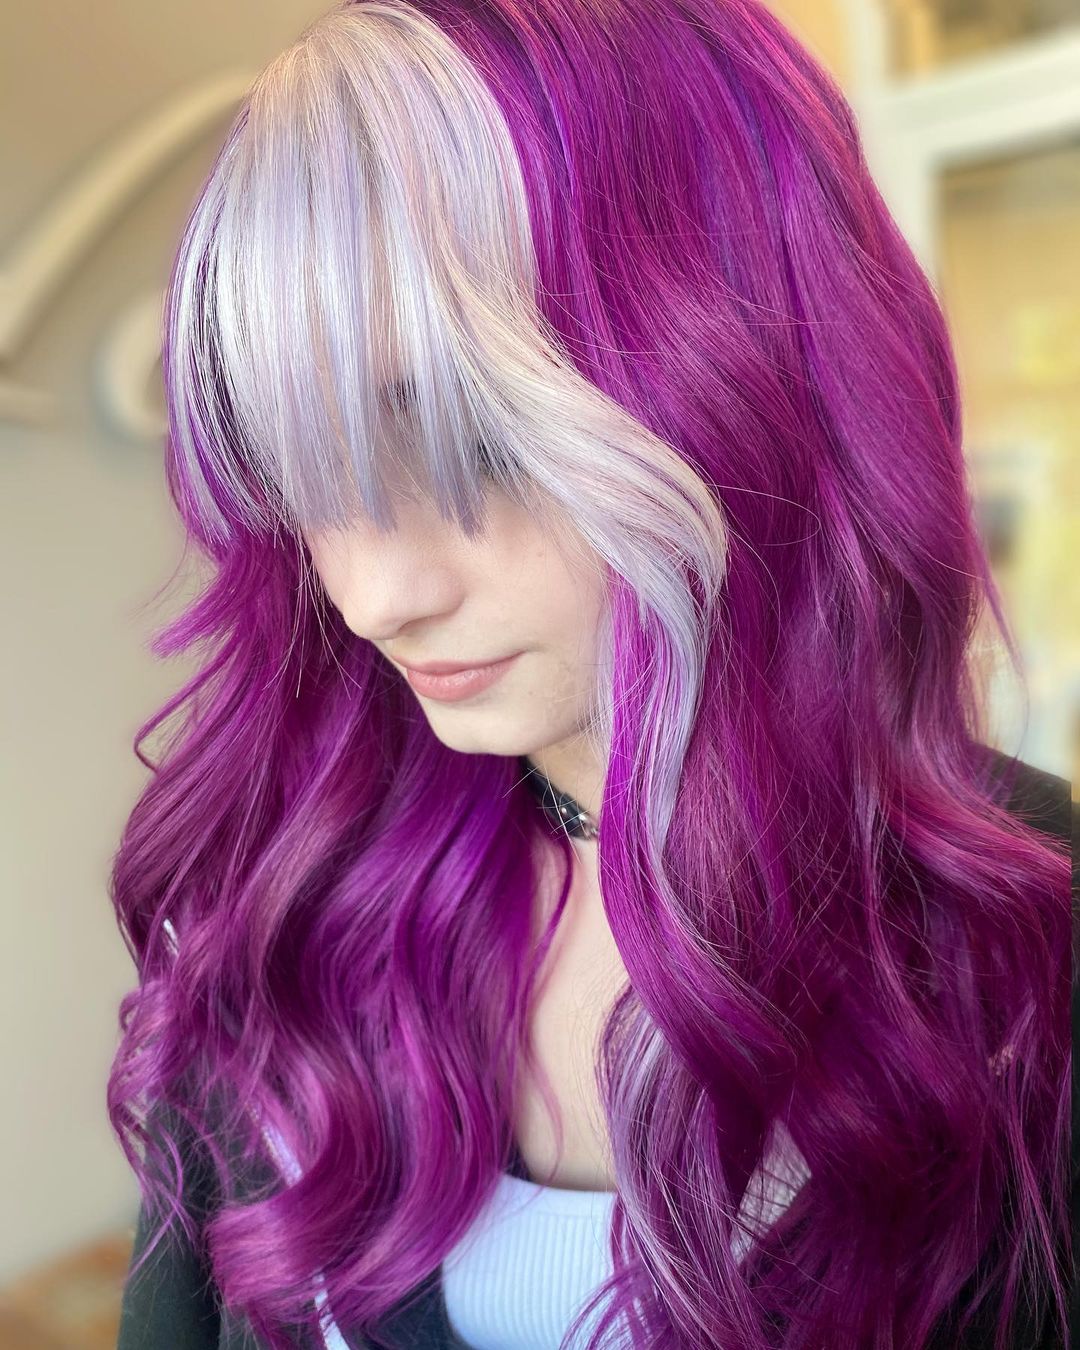 cabelo púrpura e franja louro-acinzentada